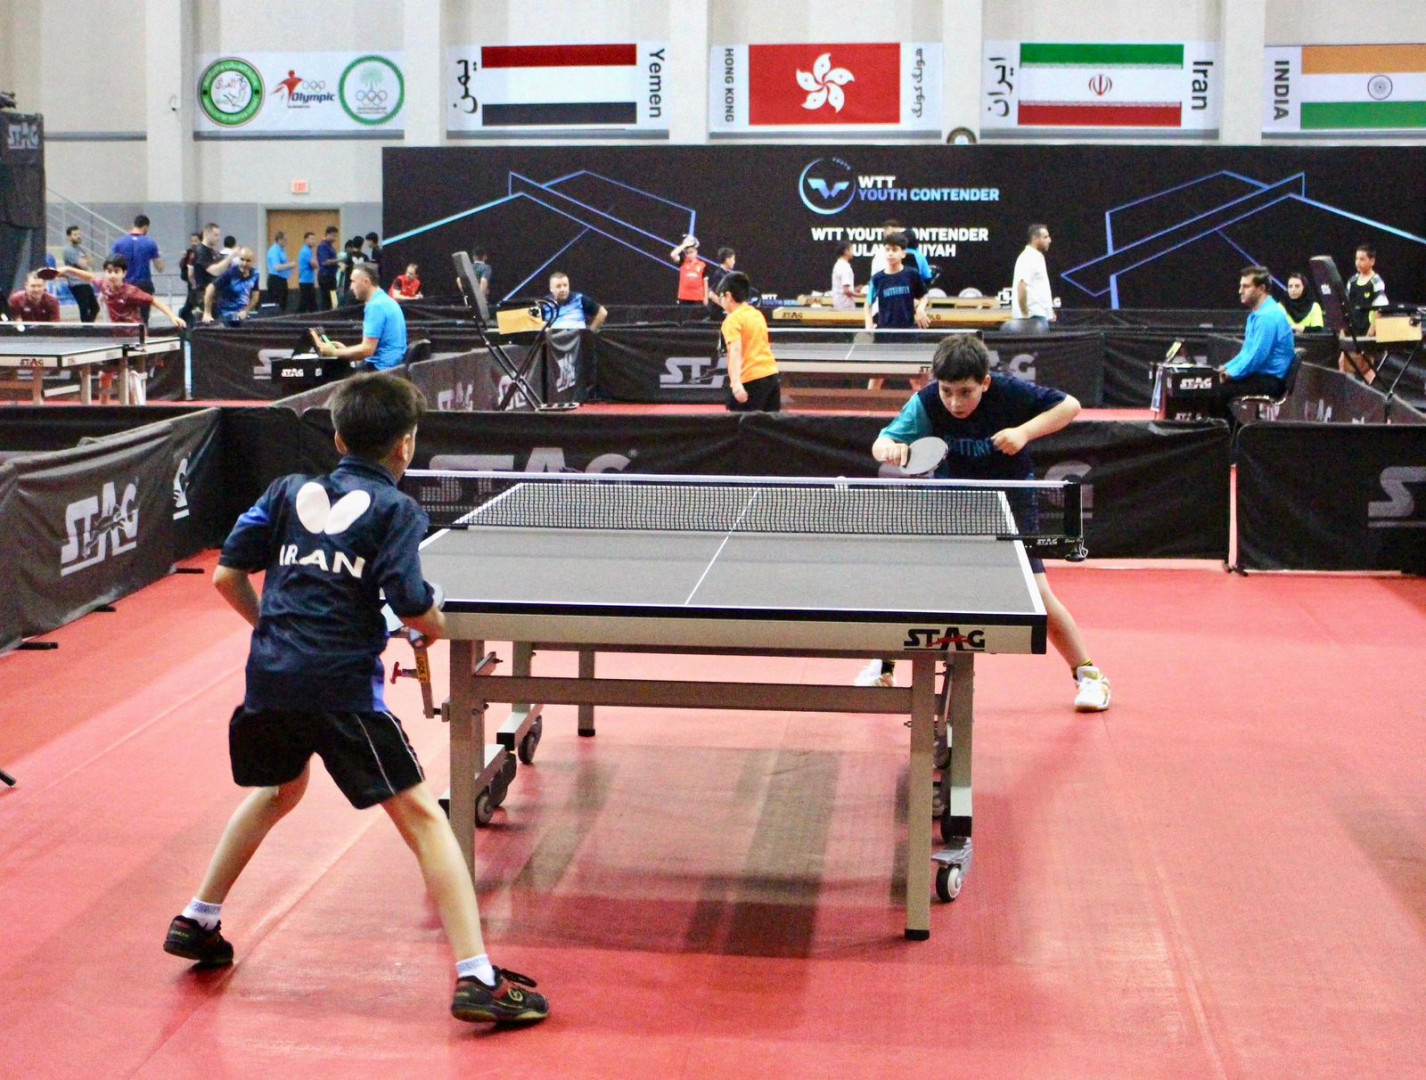 السليمانية.. انطلاق منافسات بطولة العراق الدولية لتنس الطاولة